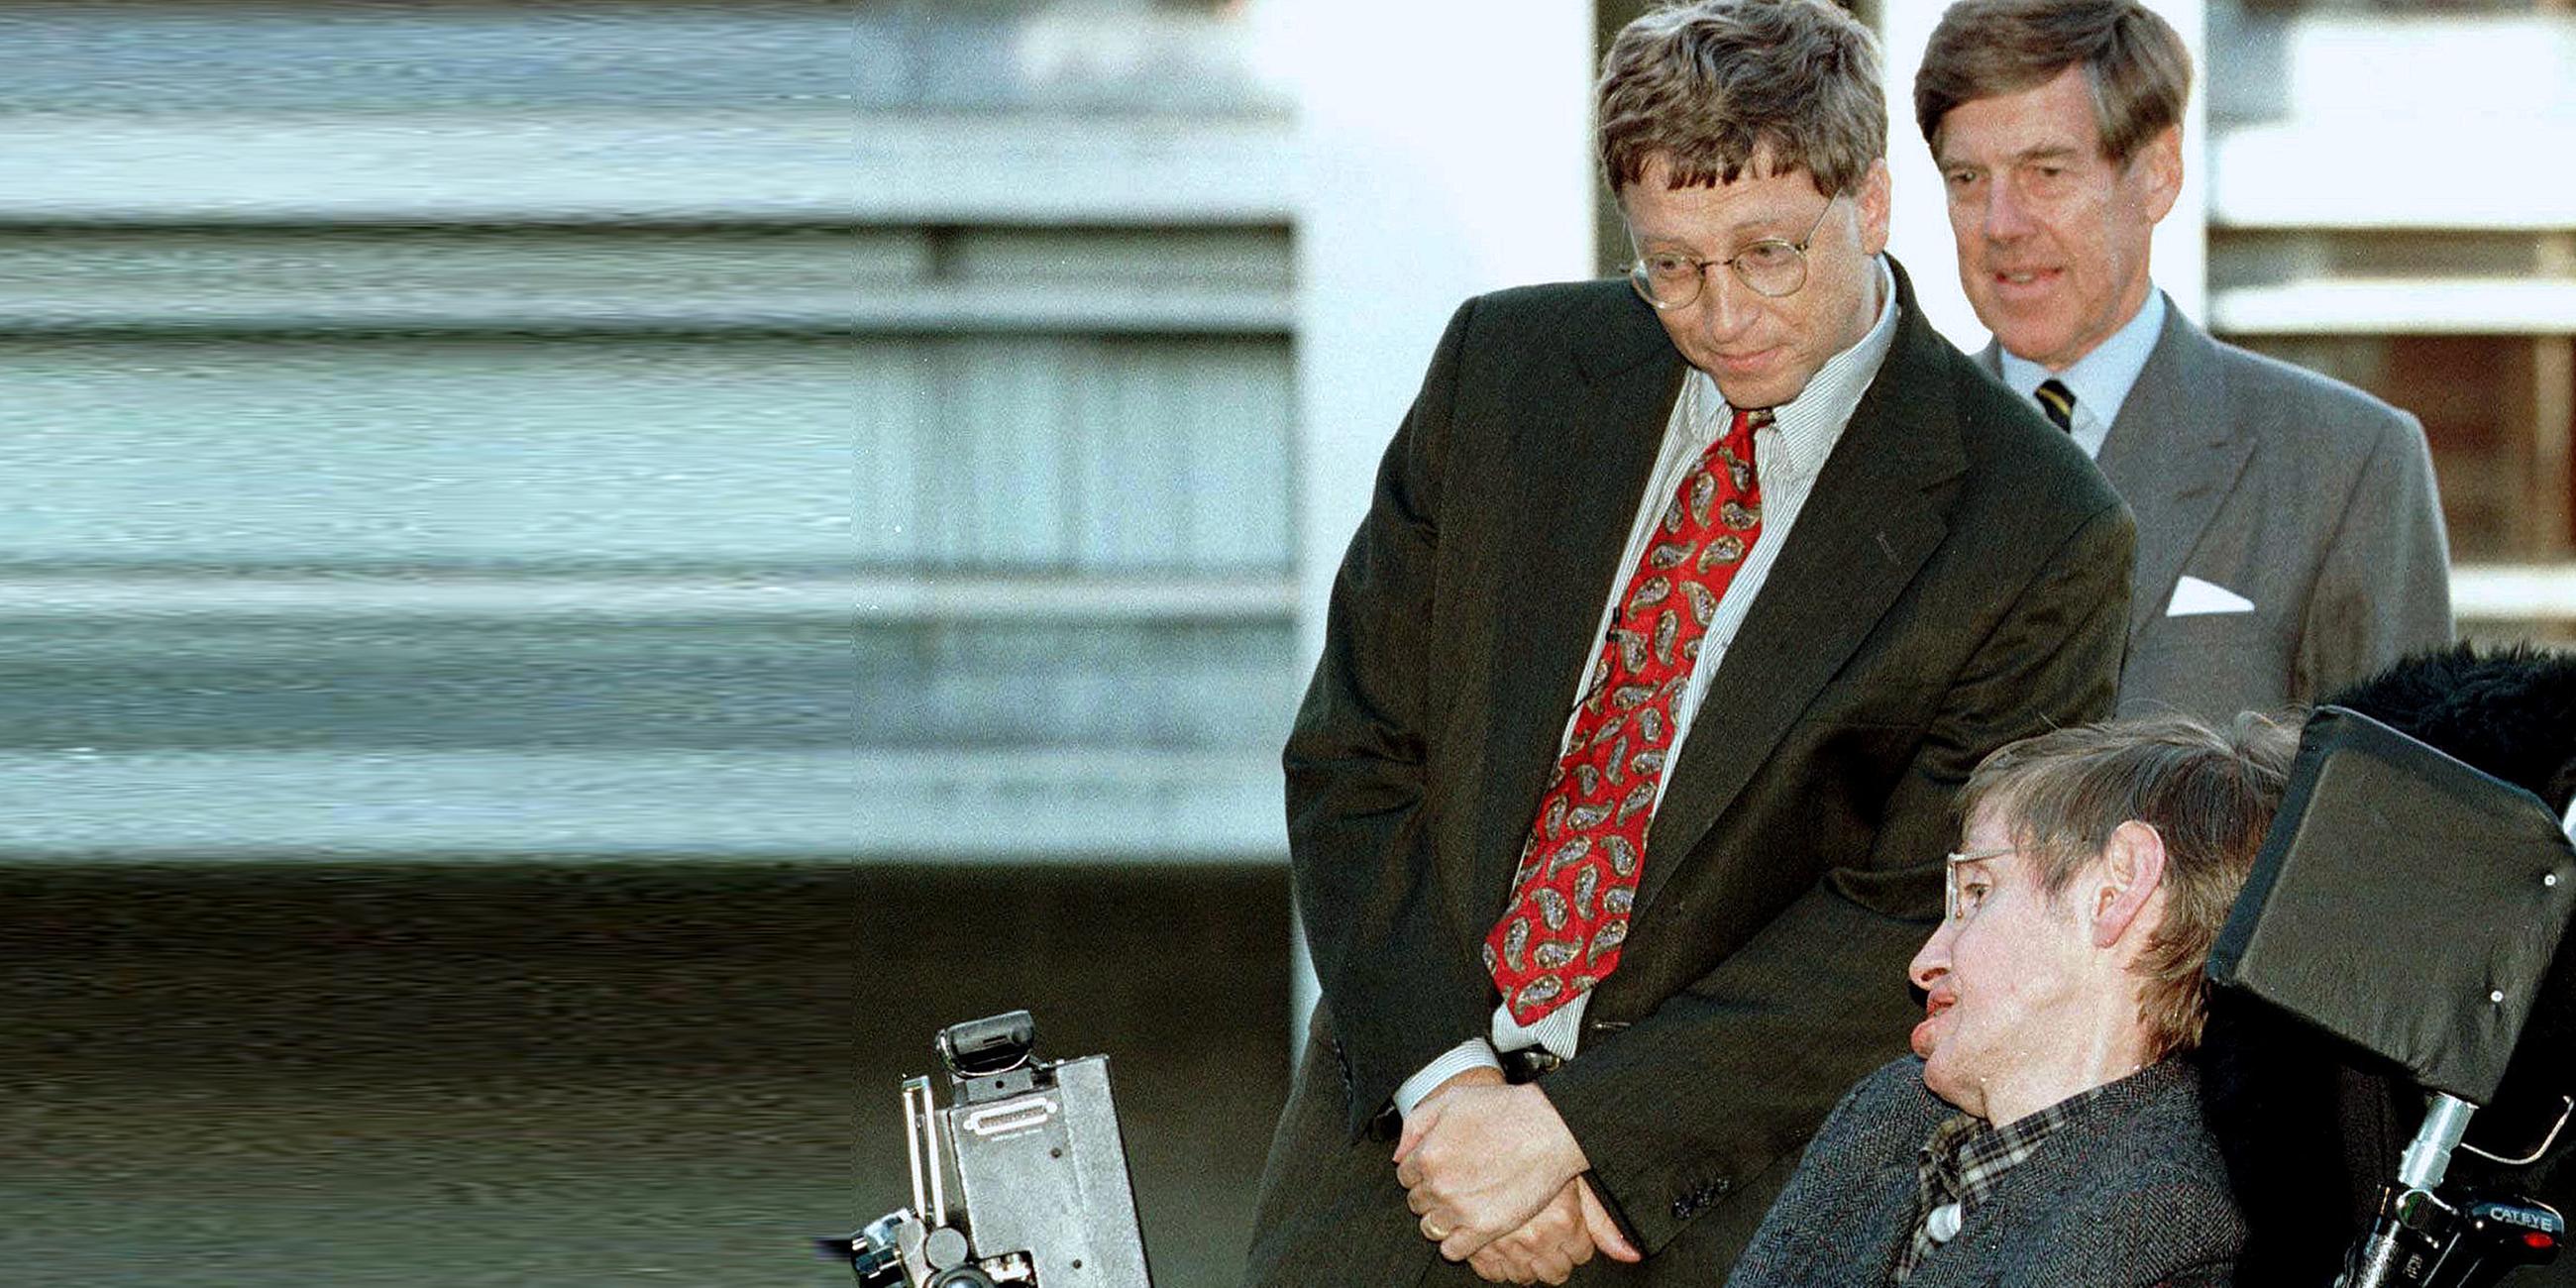 Archiv: Stephen Hawking und Bill Gates, aufgenommen am 07.10.1997